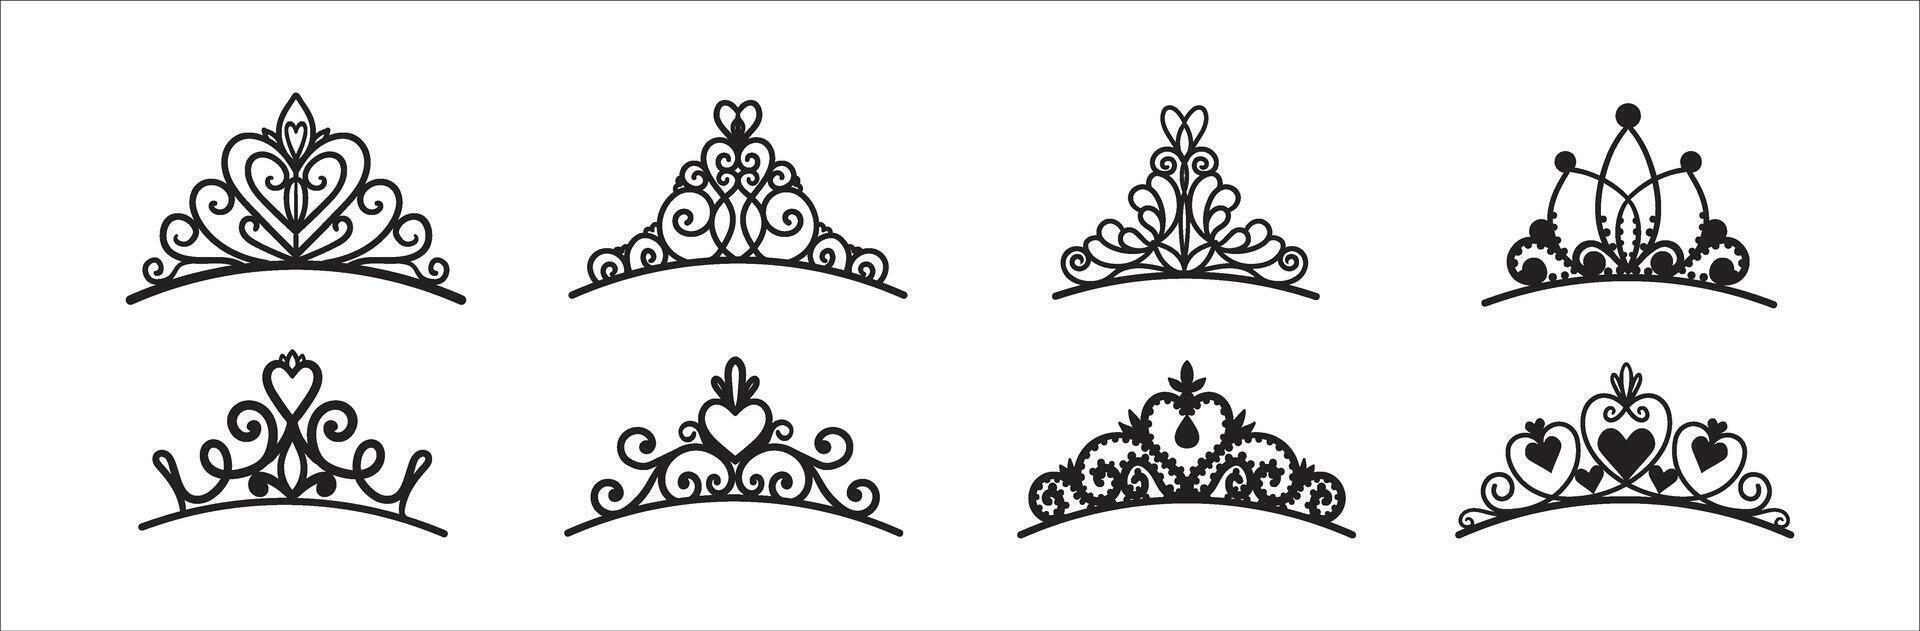 conjunto de diferente siluetas de tiaras y coronas lujo Príncipe y princesa tocados en garabatear estilo. vector